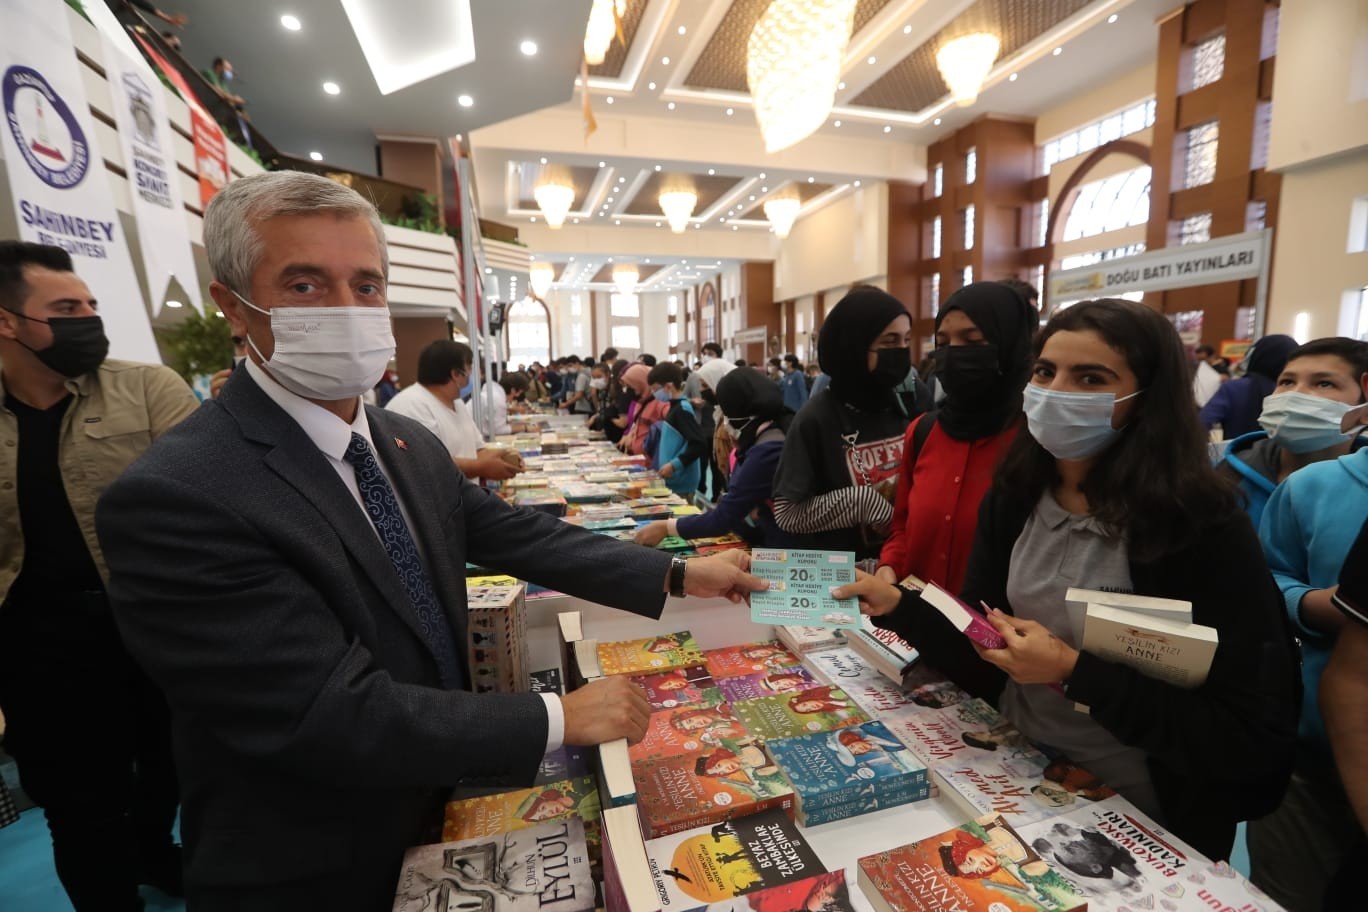 Şahinbey Belediyesi’nden 50 bin öğrenciye 80 TL değerinde kitap hediye çeki #gaziantep